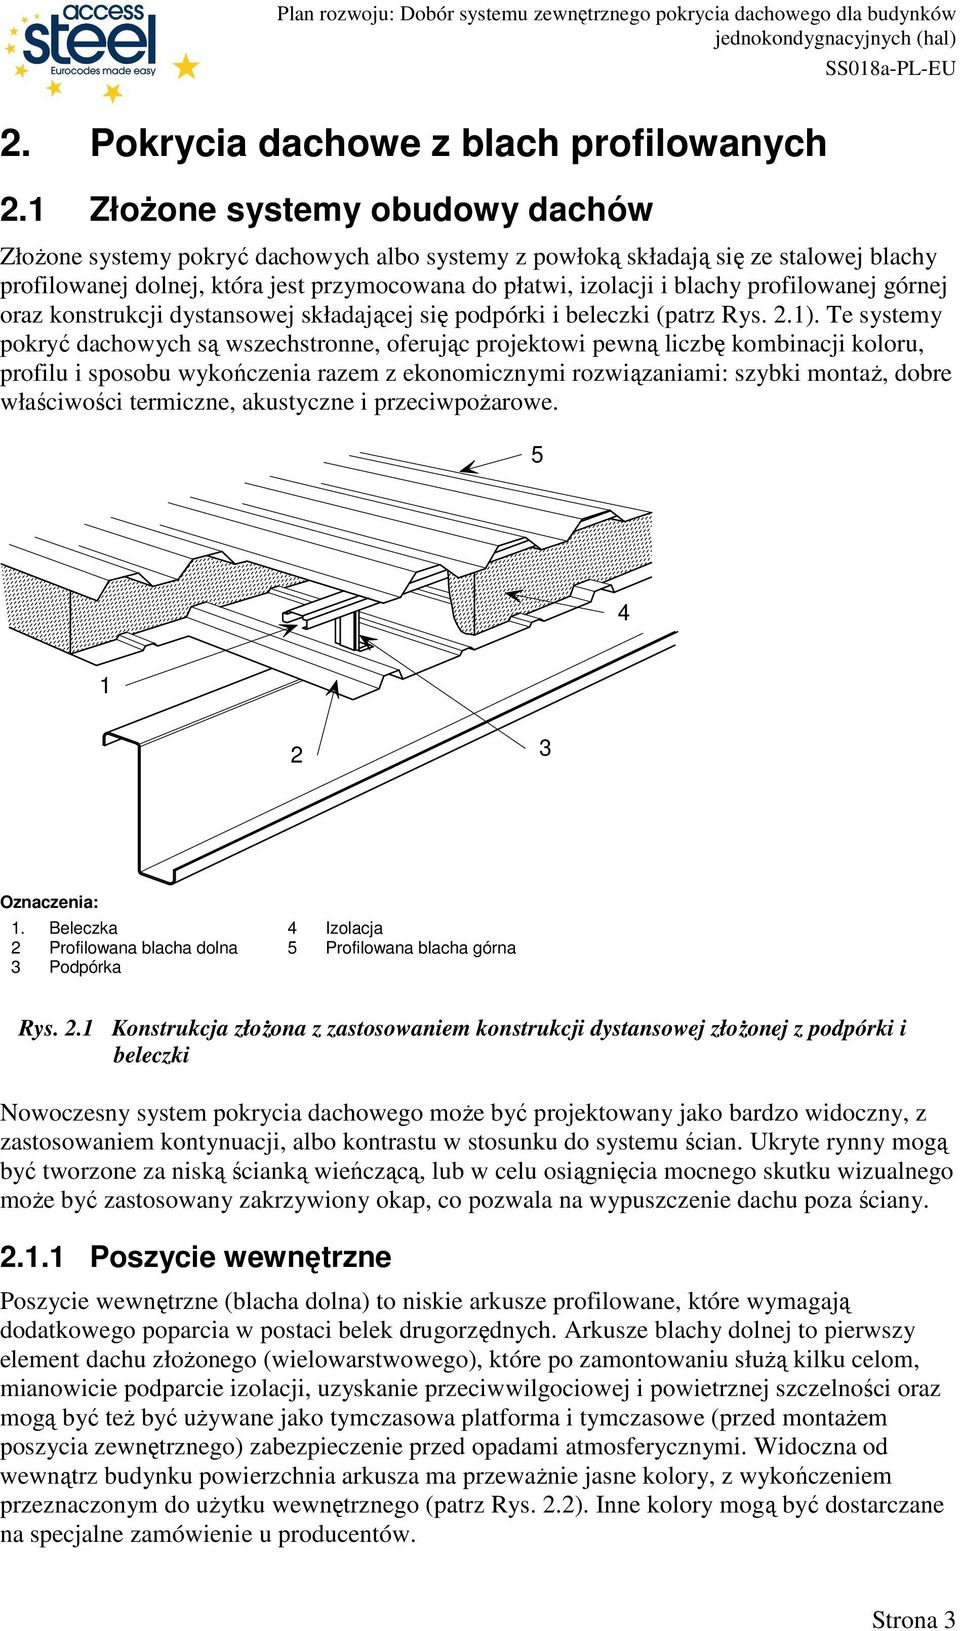 profilowanej górnej oraz konstrukcji dystansowej składającej się podpórki i beleczki (patrz Rys. 2.1).